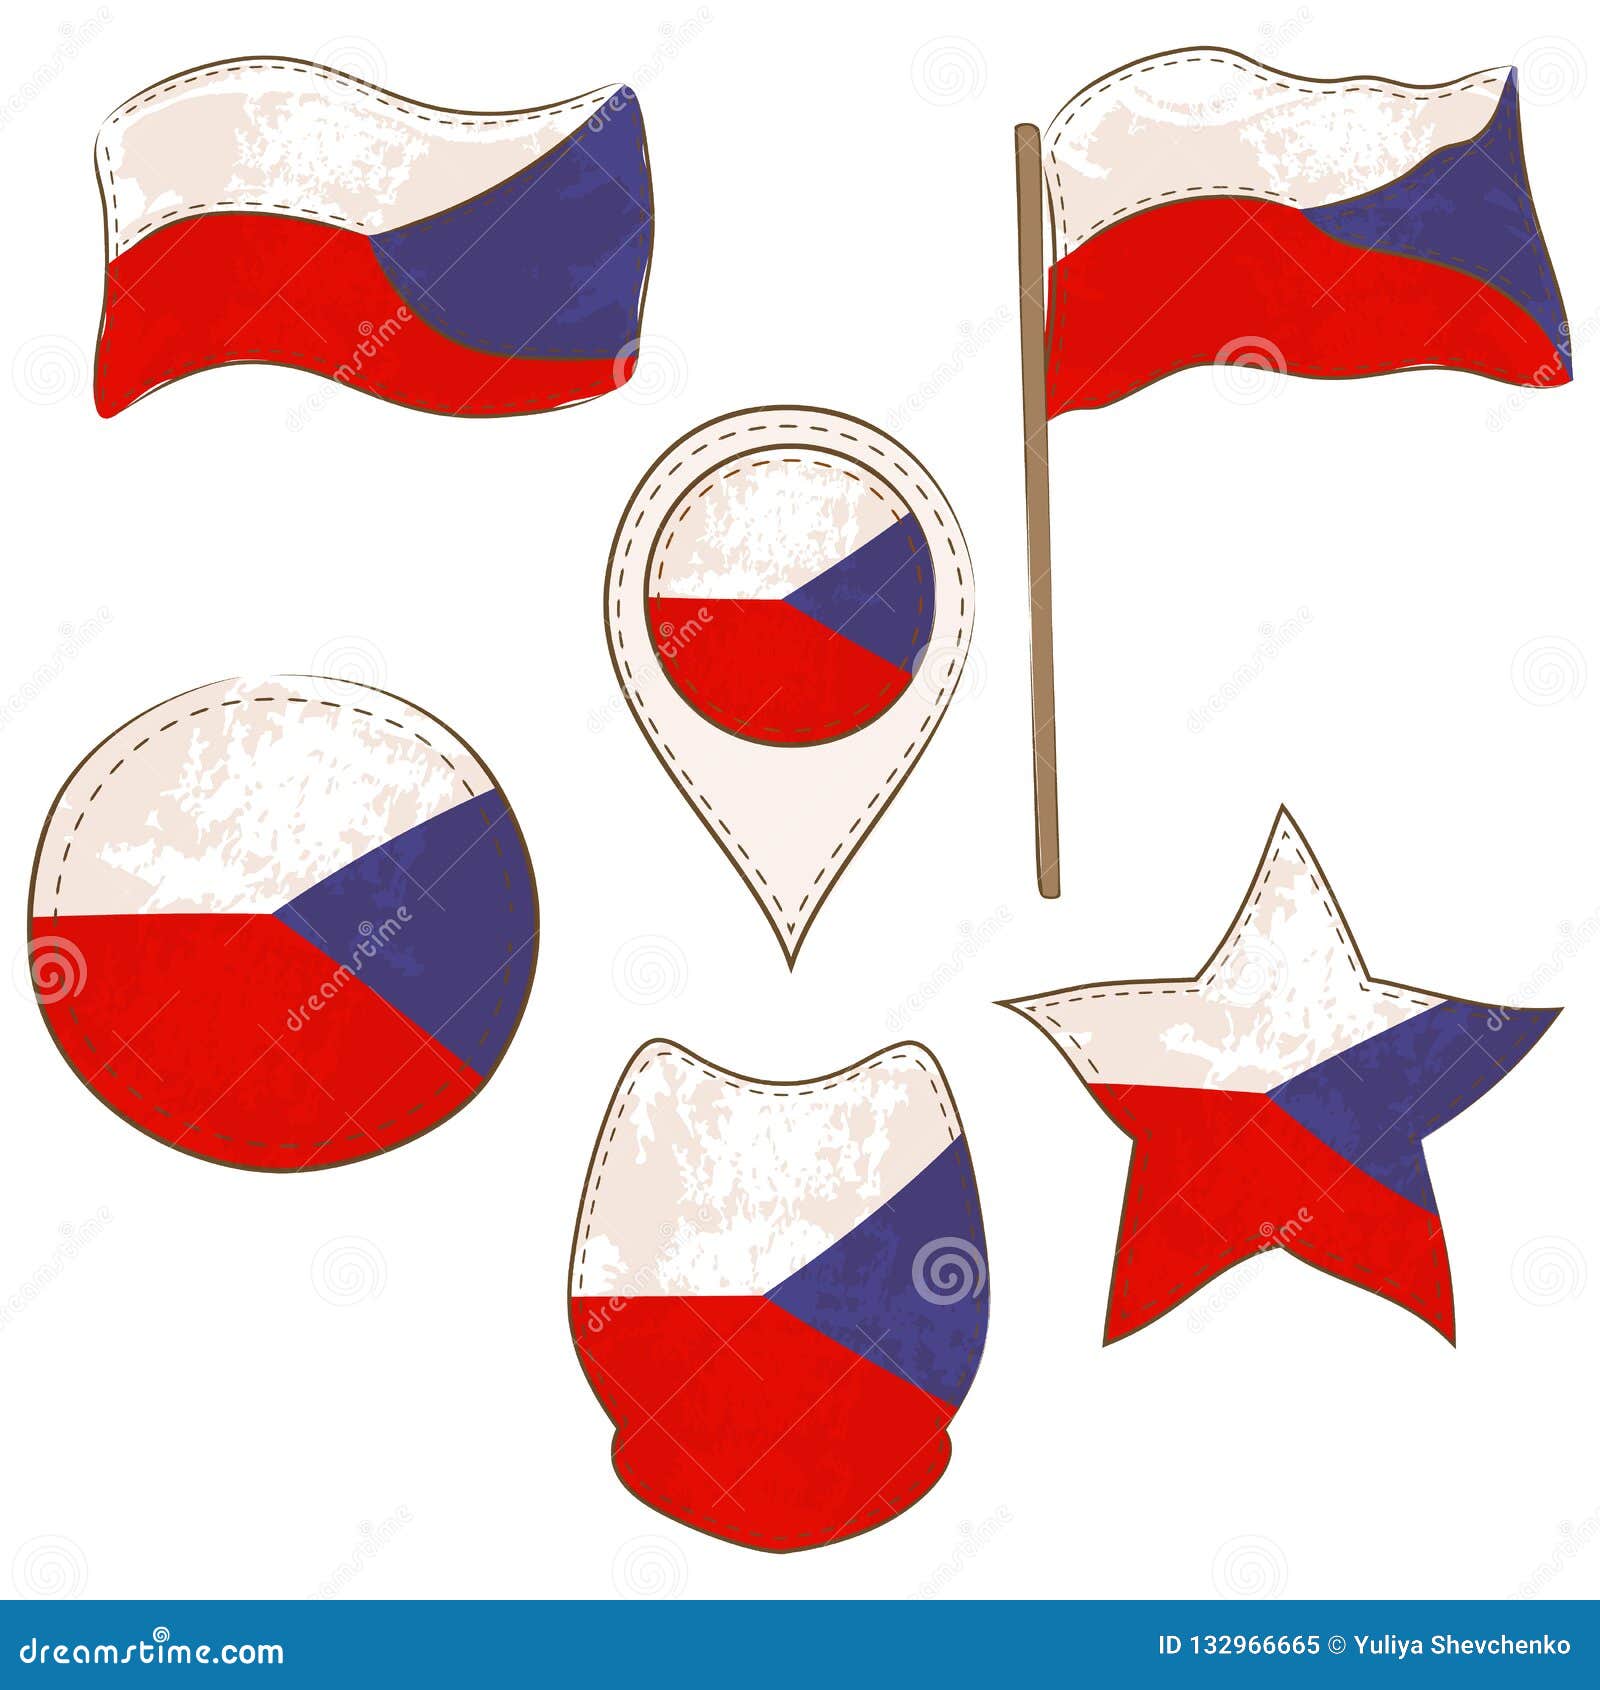 Flagge Der Tschechischen Republik Gemacht In Den Verschiedenen Formen Vektor Abbildung Illustration Von Sechs Abbildung 132966665